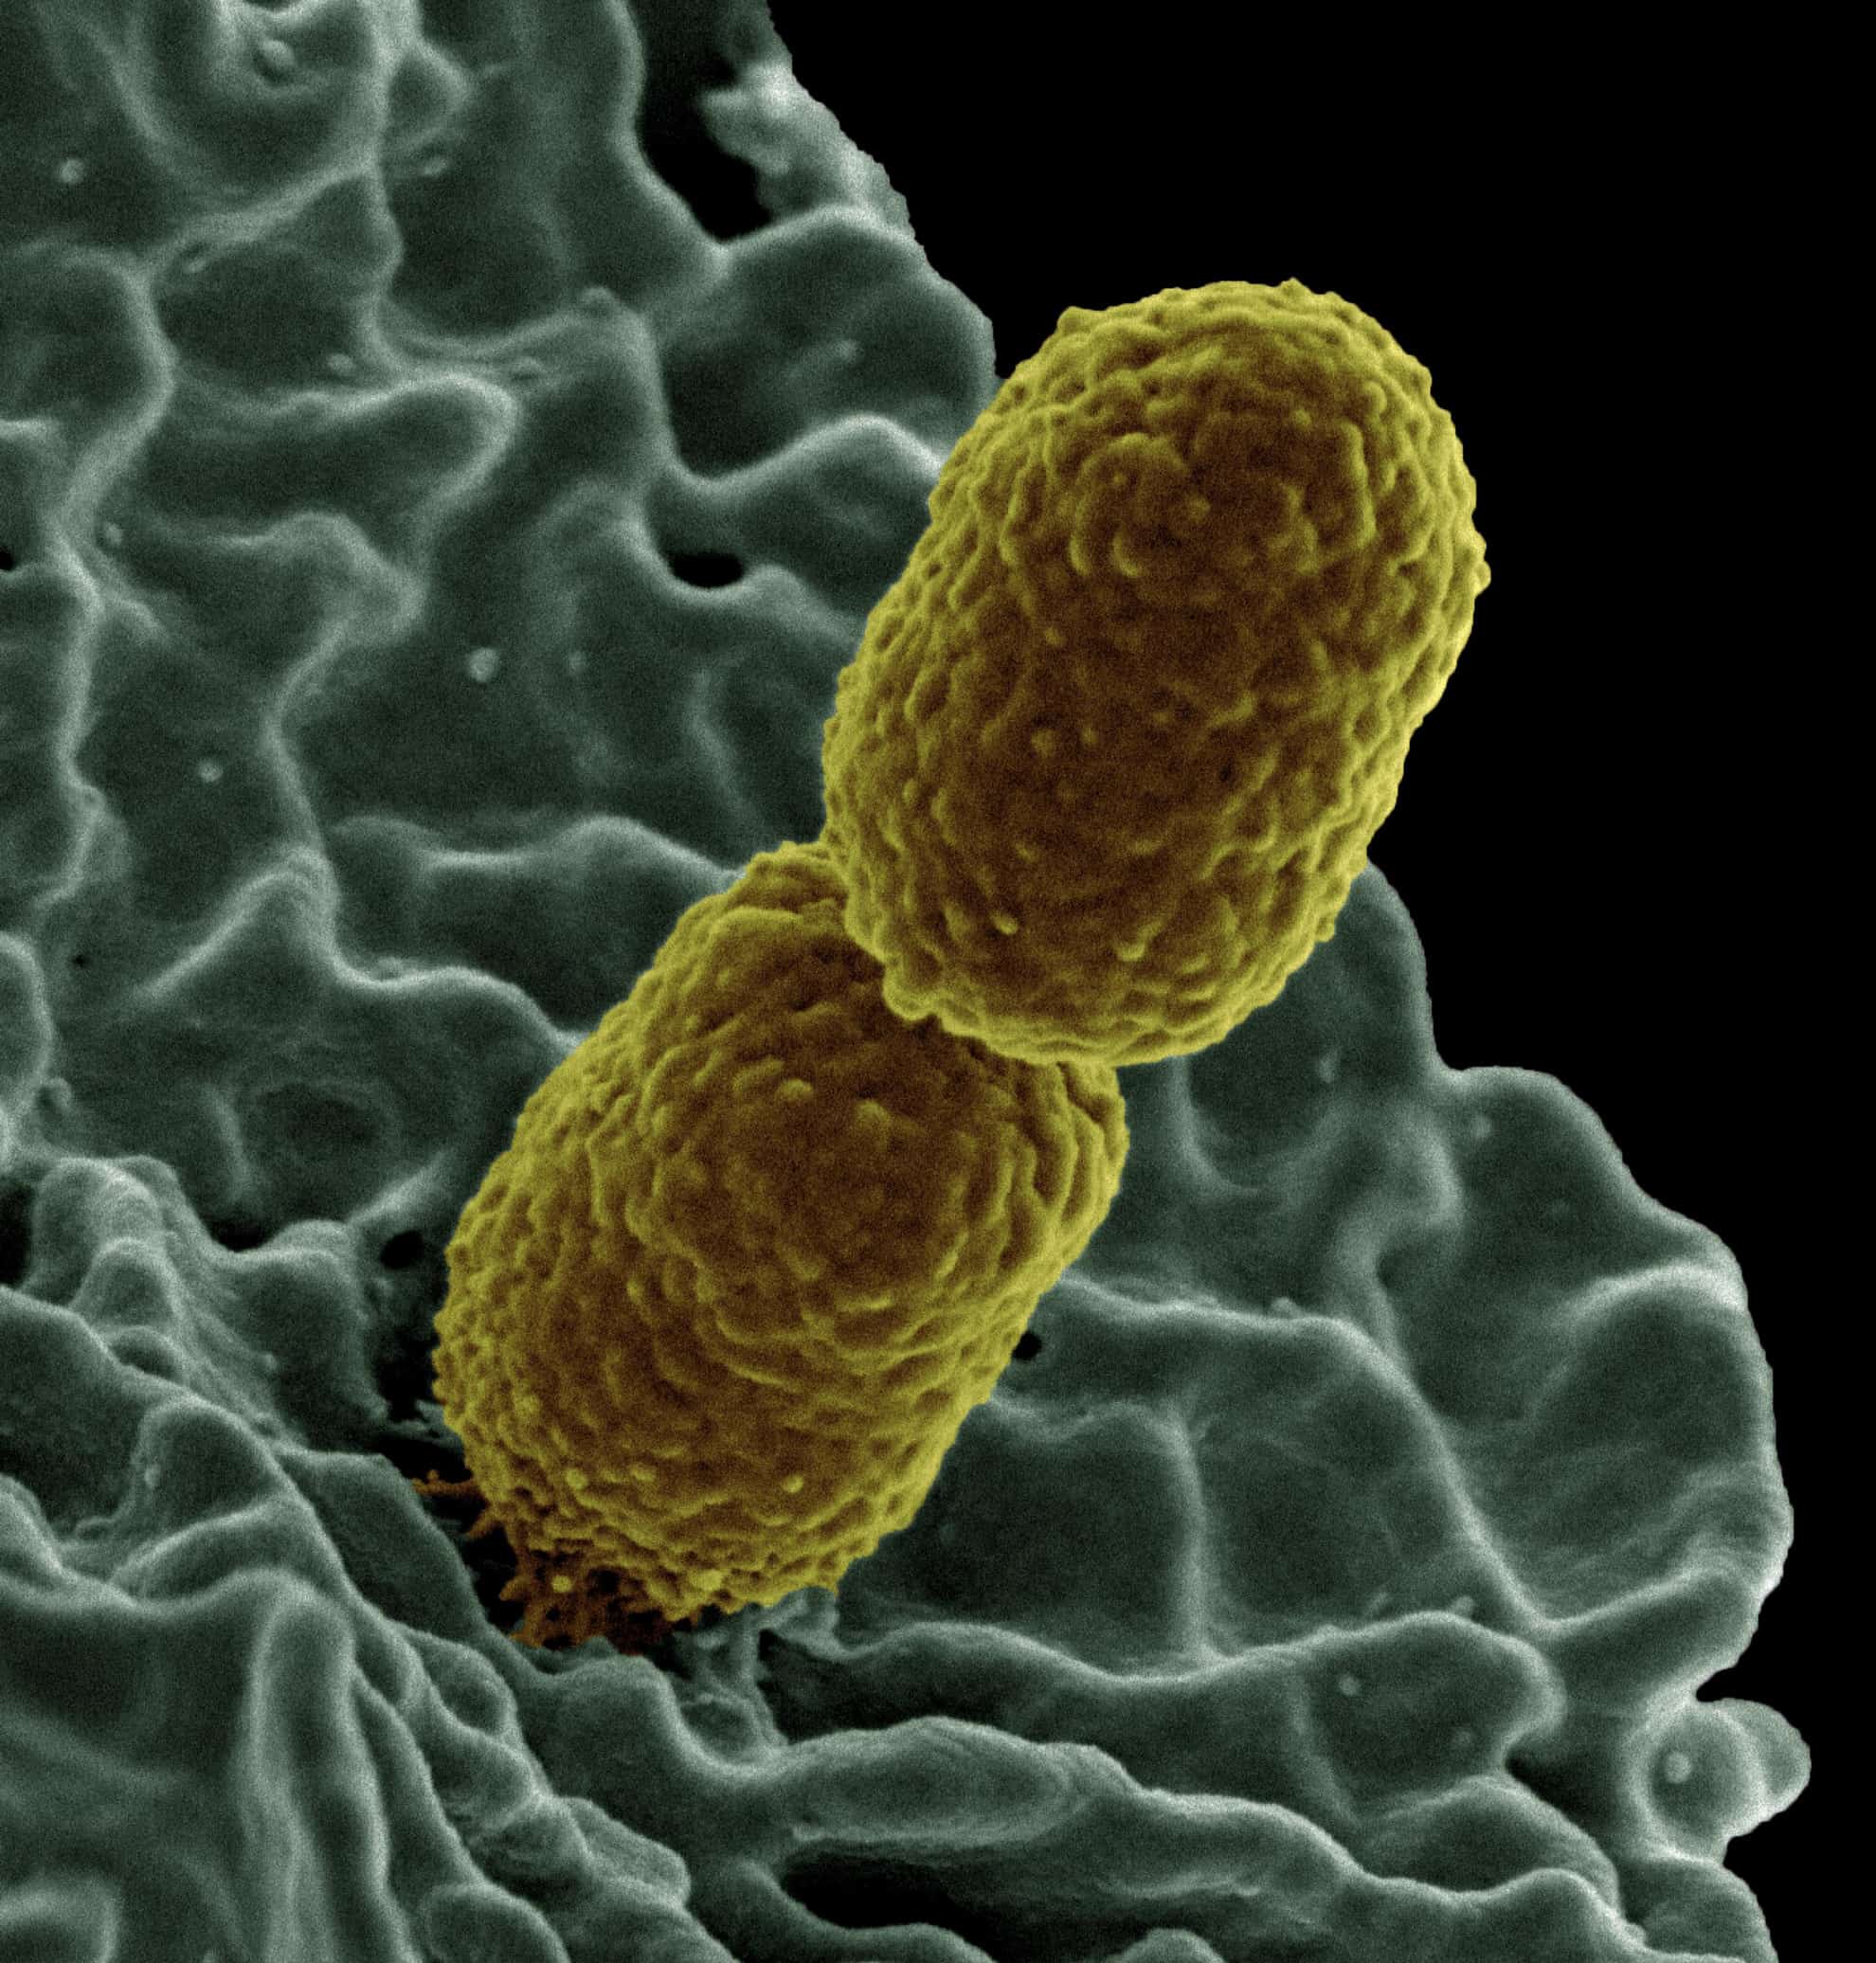 Resultado de imagen para enterobacterias